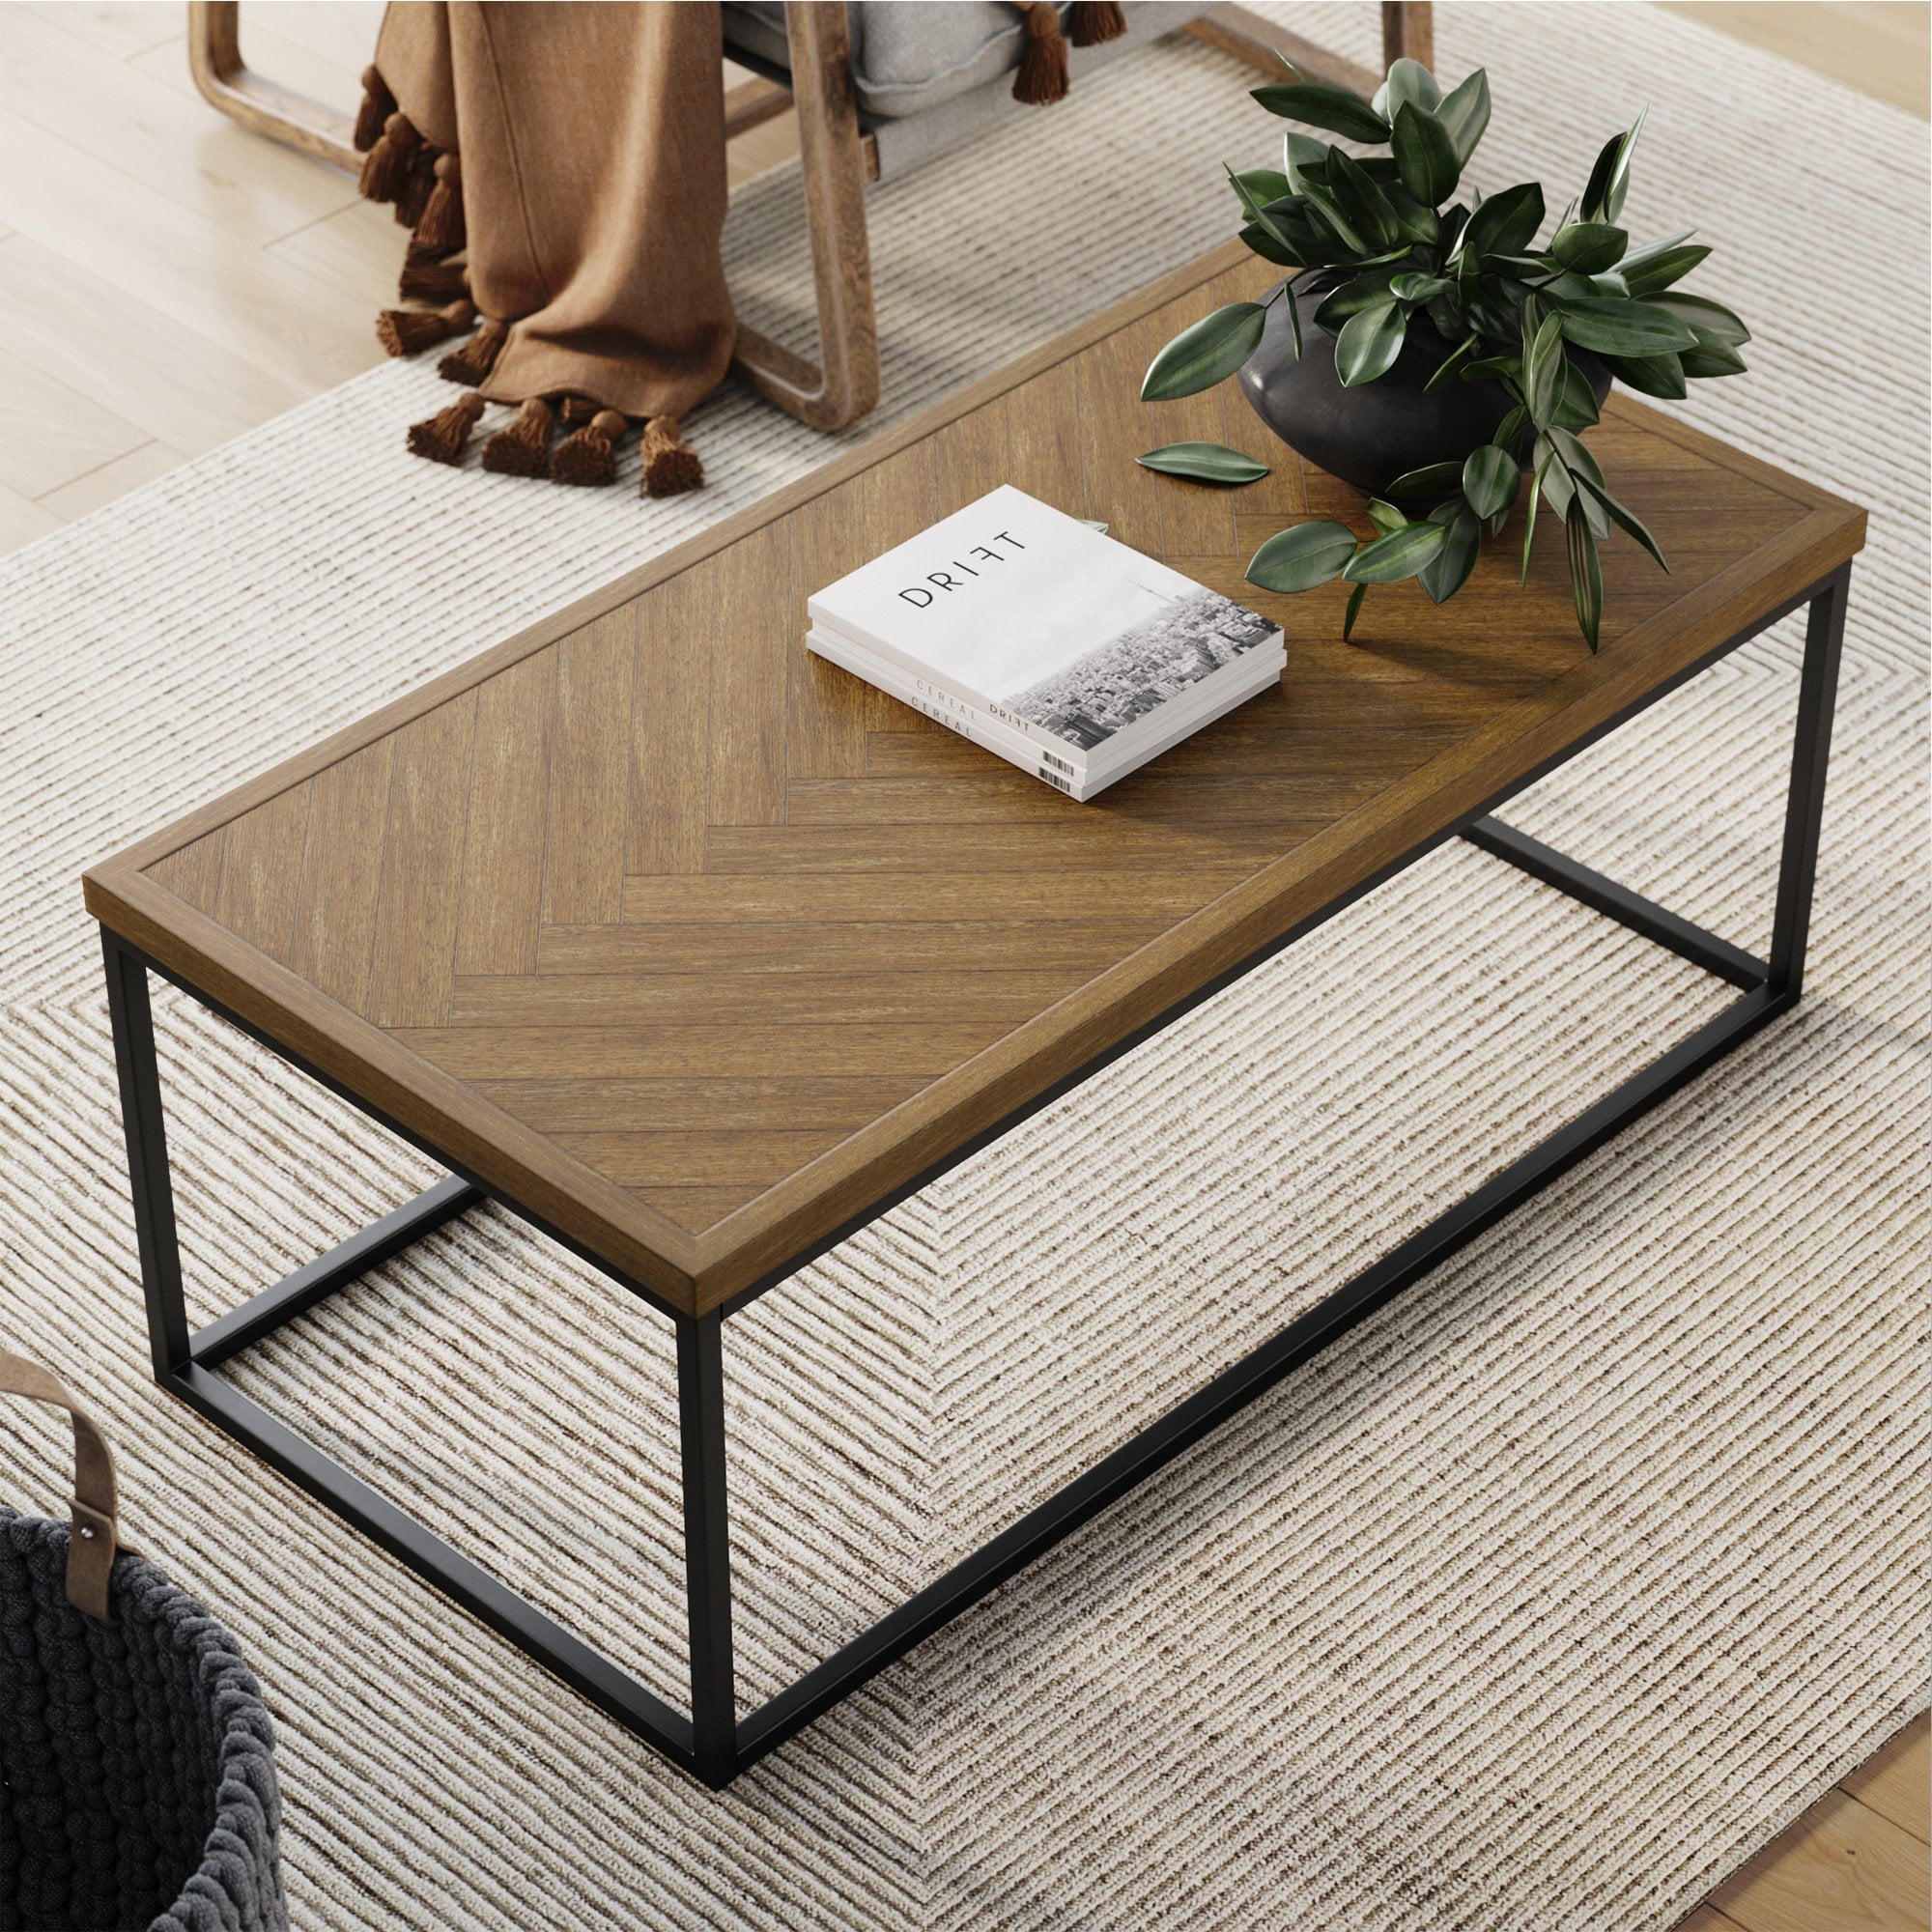 Nathan James Doxa Modern Industrial Coffee Table Wood In Dark Brown Herringbone Pattern And Metal Box Frame